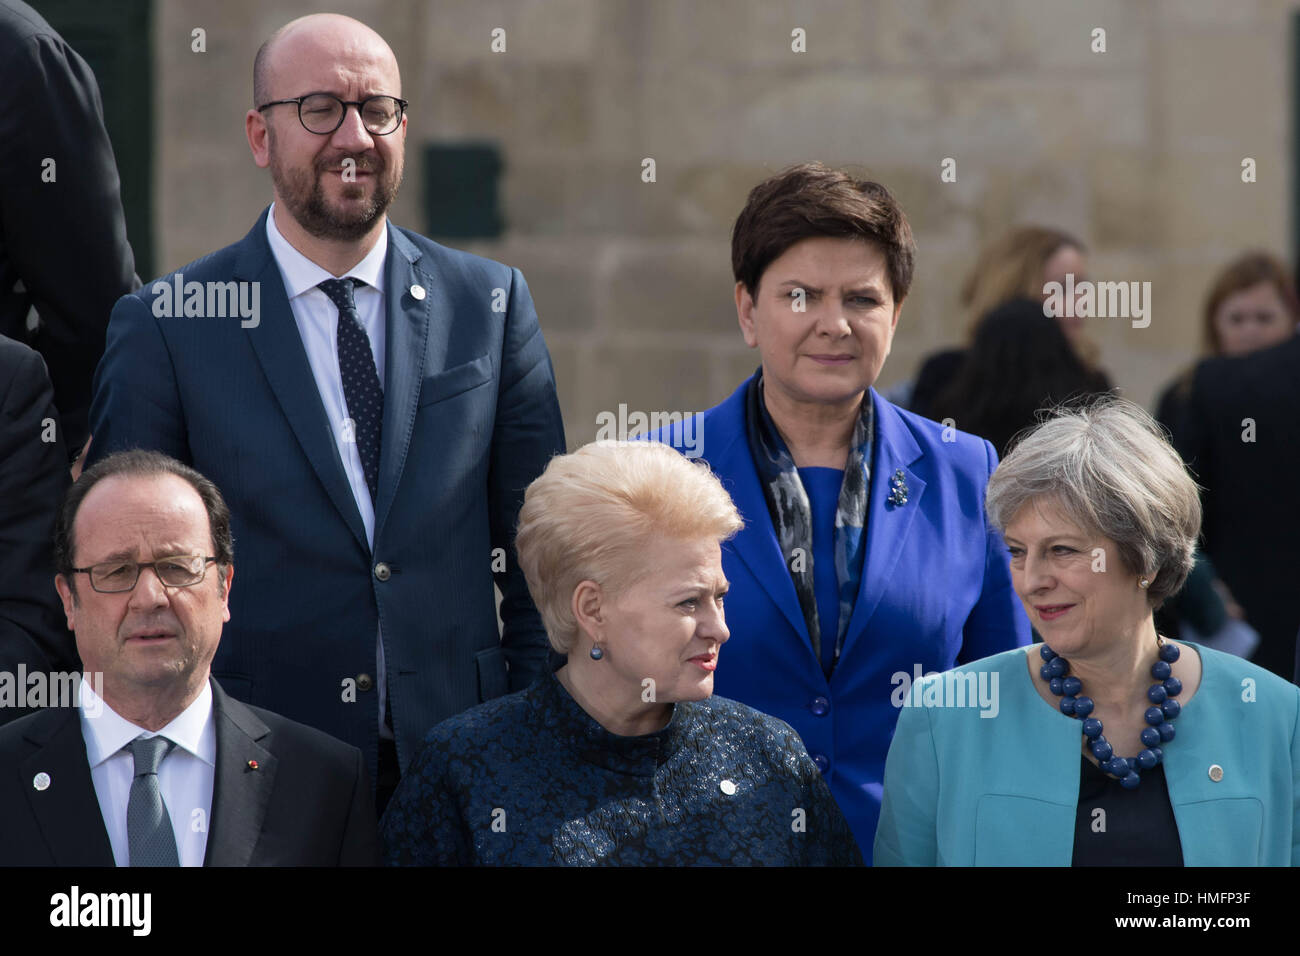 Premier ministre Theresa peut (avant droit) se trouve à côté de le président de la Lituanie, Dalia Grybauskaite et le président français François Hollande (à gauche), ils assistent à une "famille" photographie avec d'autres homologues européens après avoir assisté à la première session de travail d'un sommet informel à Malte. Banque D'Images